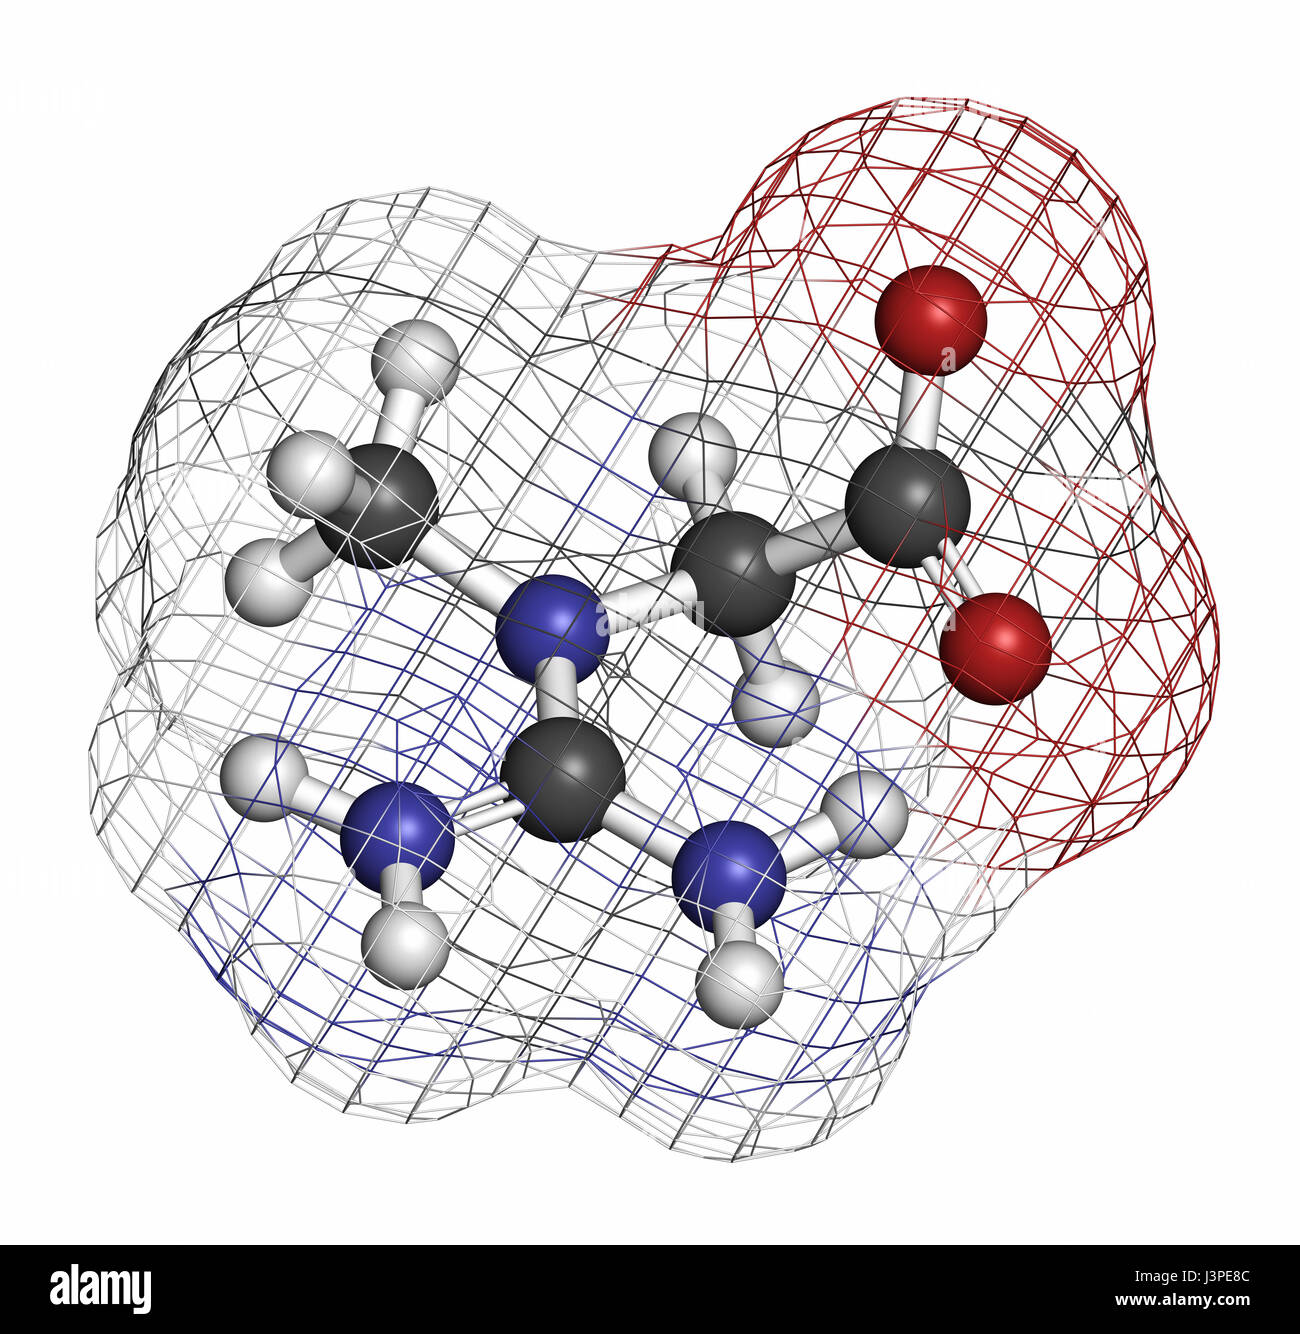 Kreatin-Molekül. Häufig verwendet in Nahrungsergänzungsmitteln. Atome sind als Kugeln mit konventionellen Farbcodierung vertreten: Wasserstoff (weiß), Kohlenstoff (grau), o Stockfoto